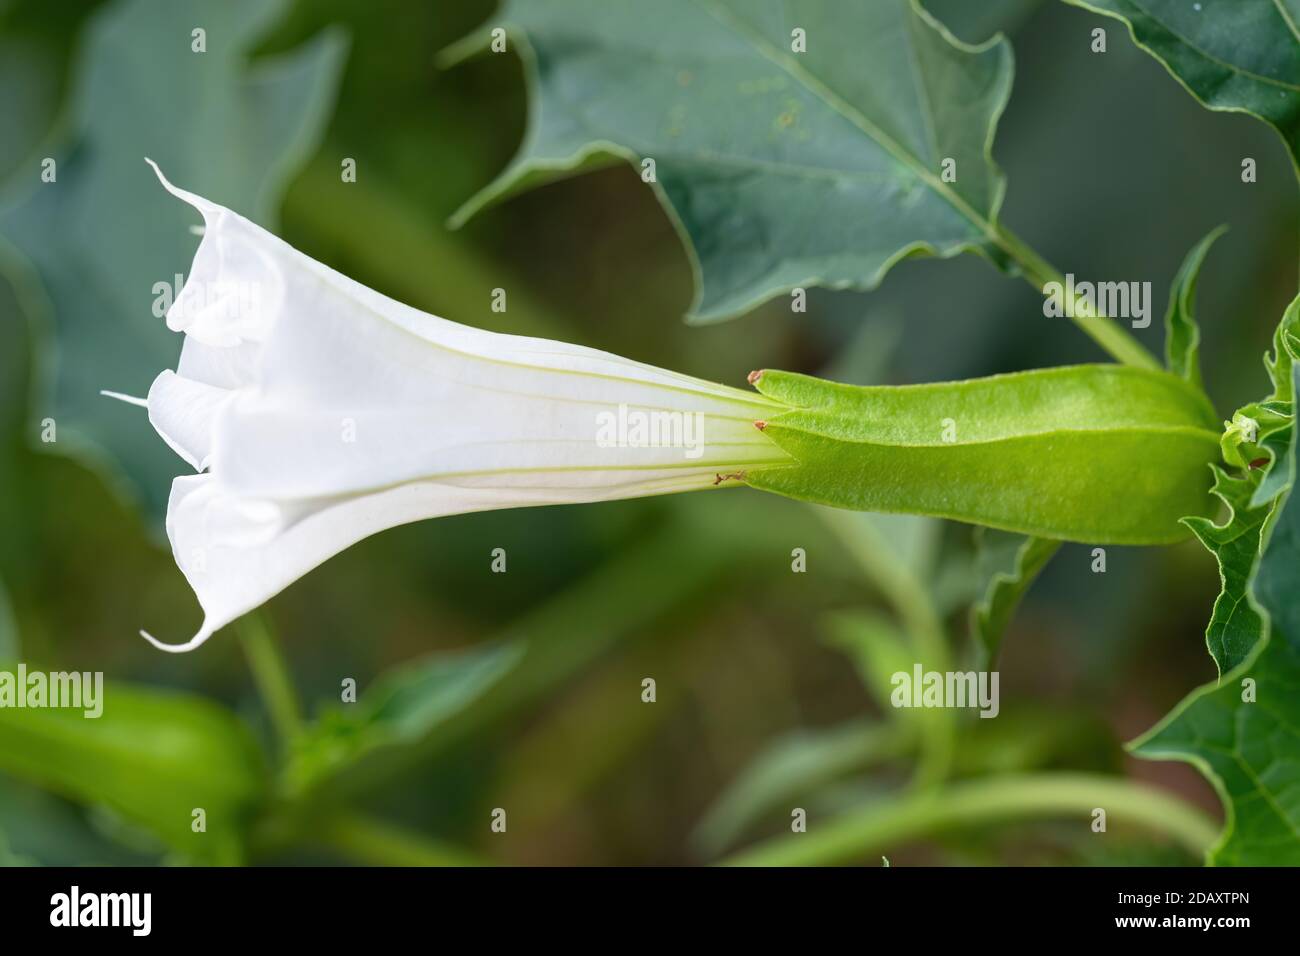 Détail de la fleur blanche en forme de trompette de la trompette de diable  de plante hallucinogène (Datura stramonium), également appelée jimsonweed.  Faible profondeur de champ et bl Photo Stock - Alamy